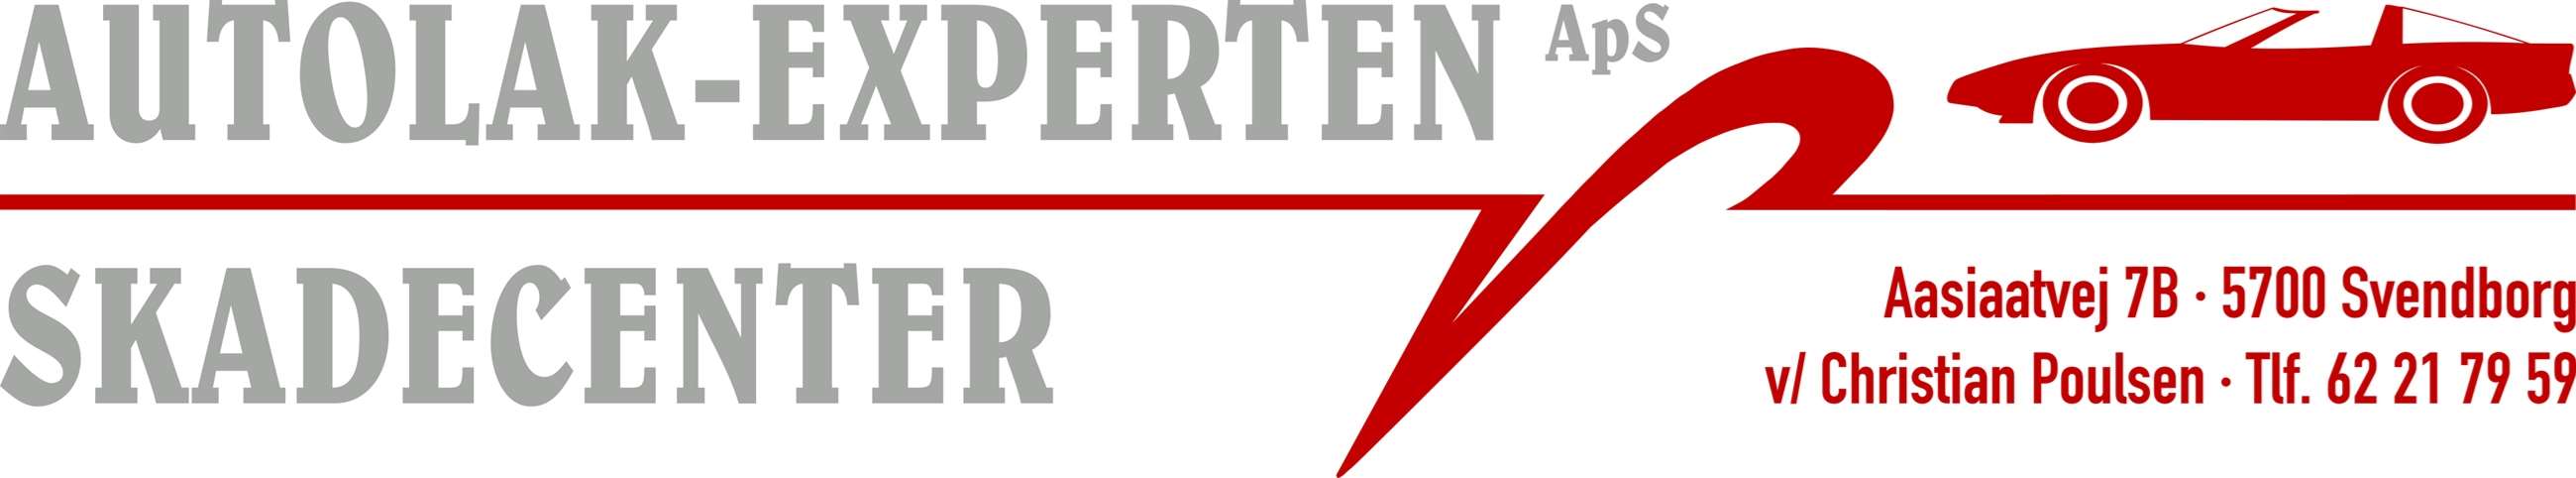 autolakexperten_nyt_logo